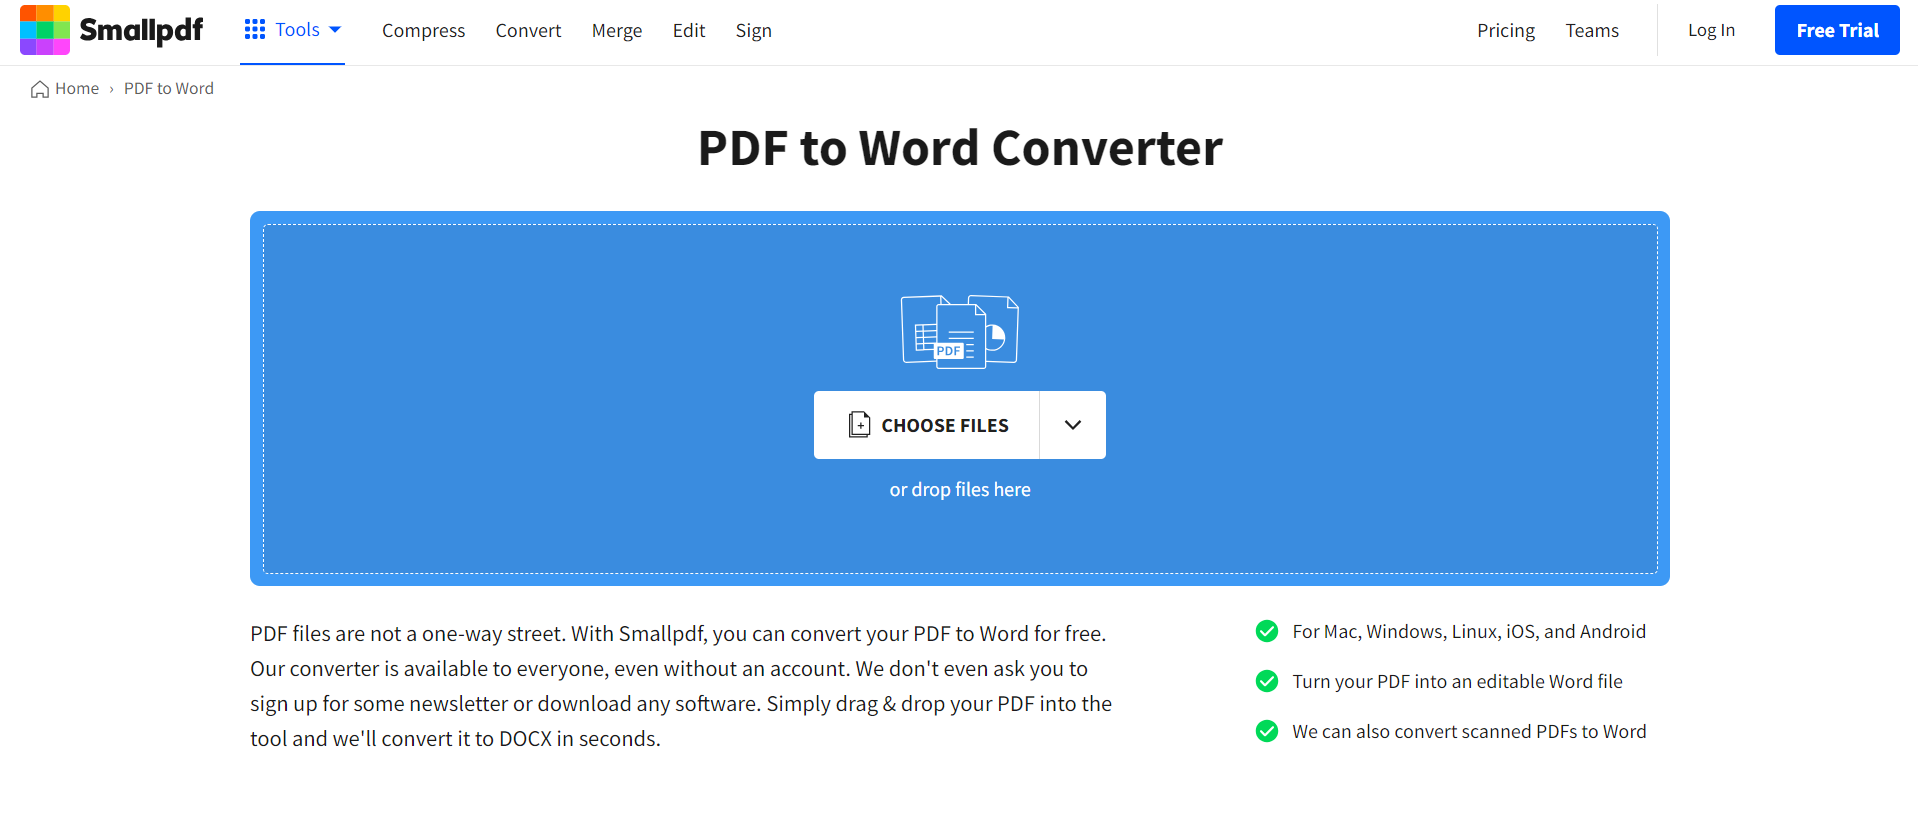 Smallpdf PDF to WORD Converter